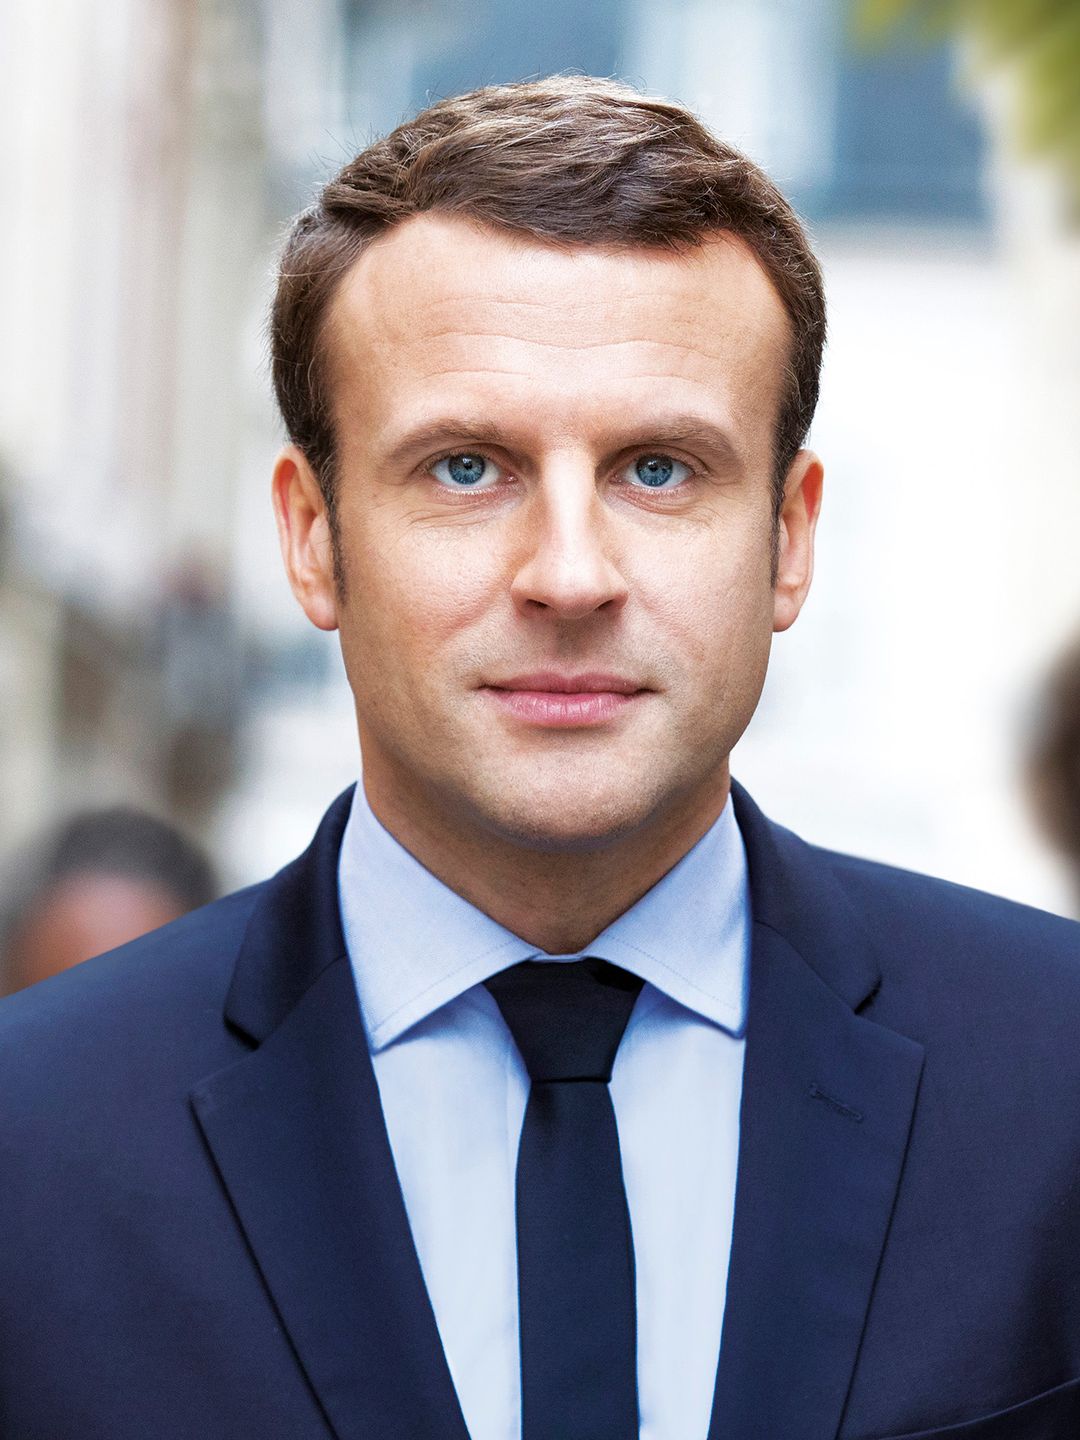 Emmanuel Macron way to fame